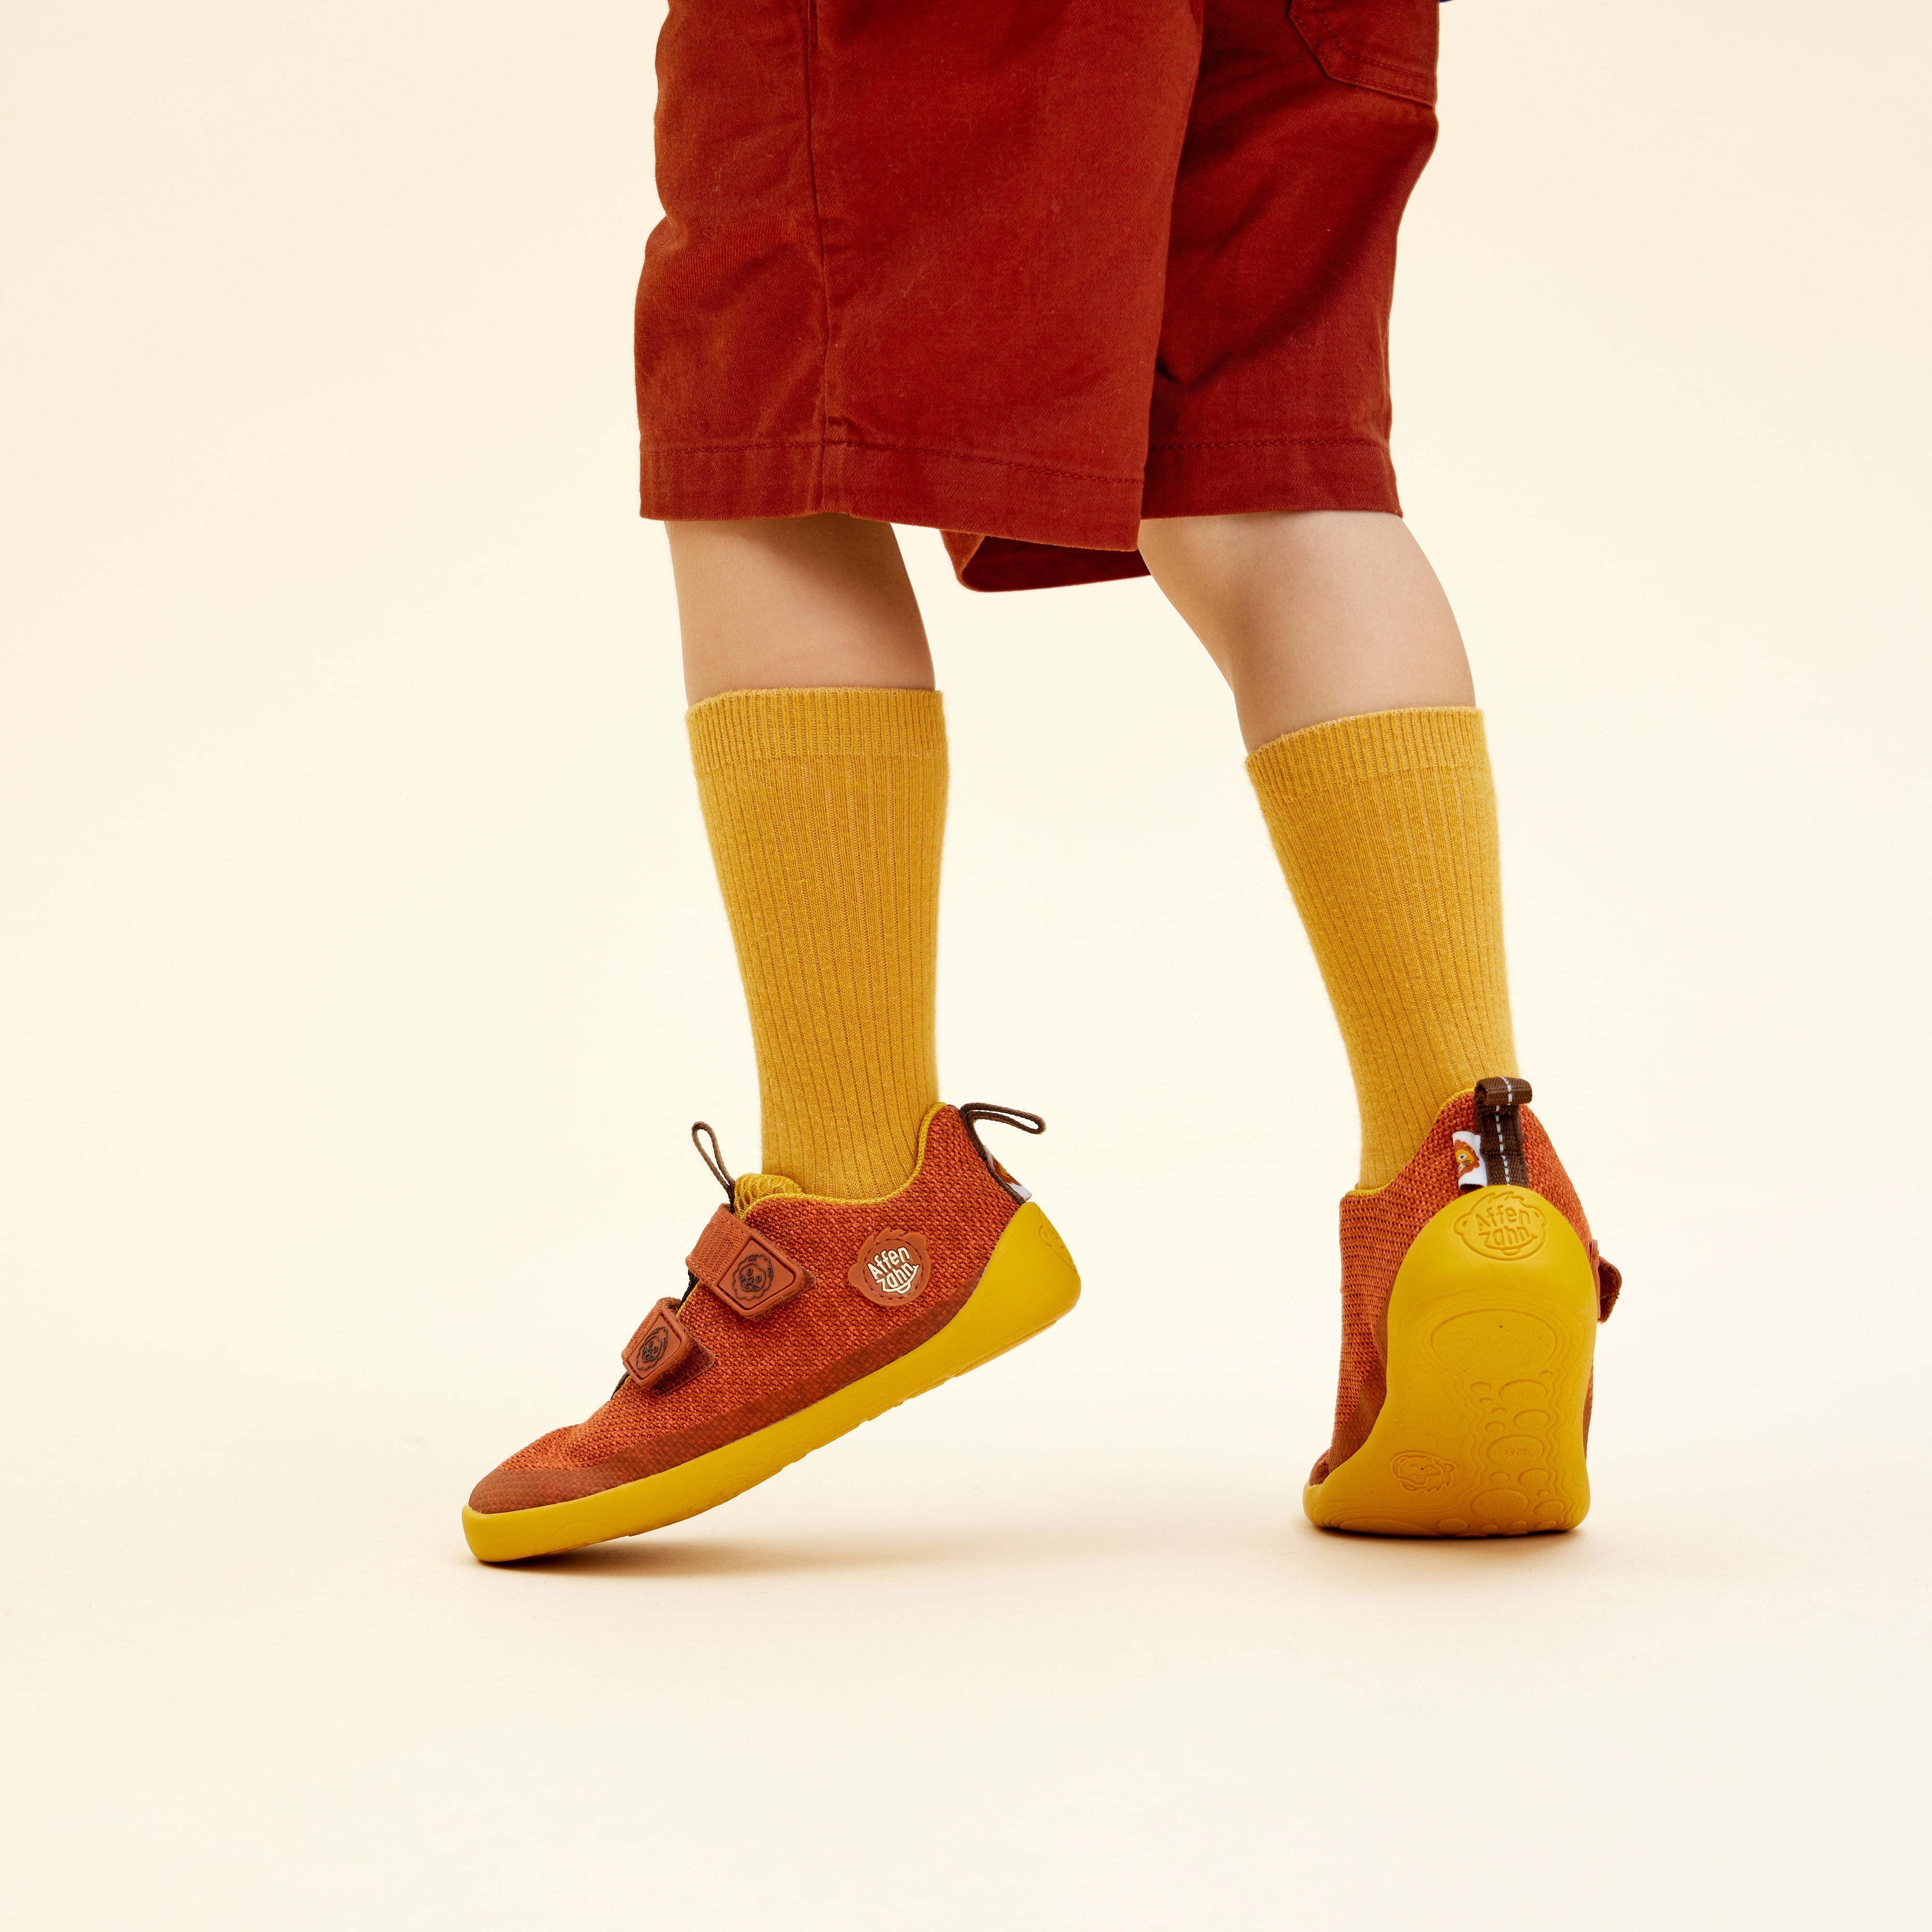 Affenzahn Knit Happy barfods sneakers til børn i farven lion, lifestyle